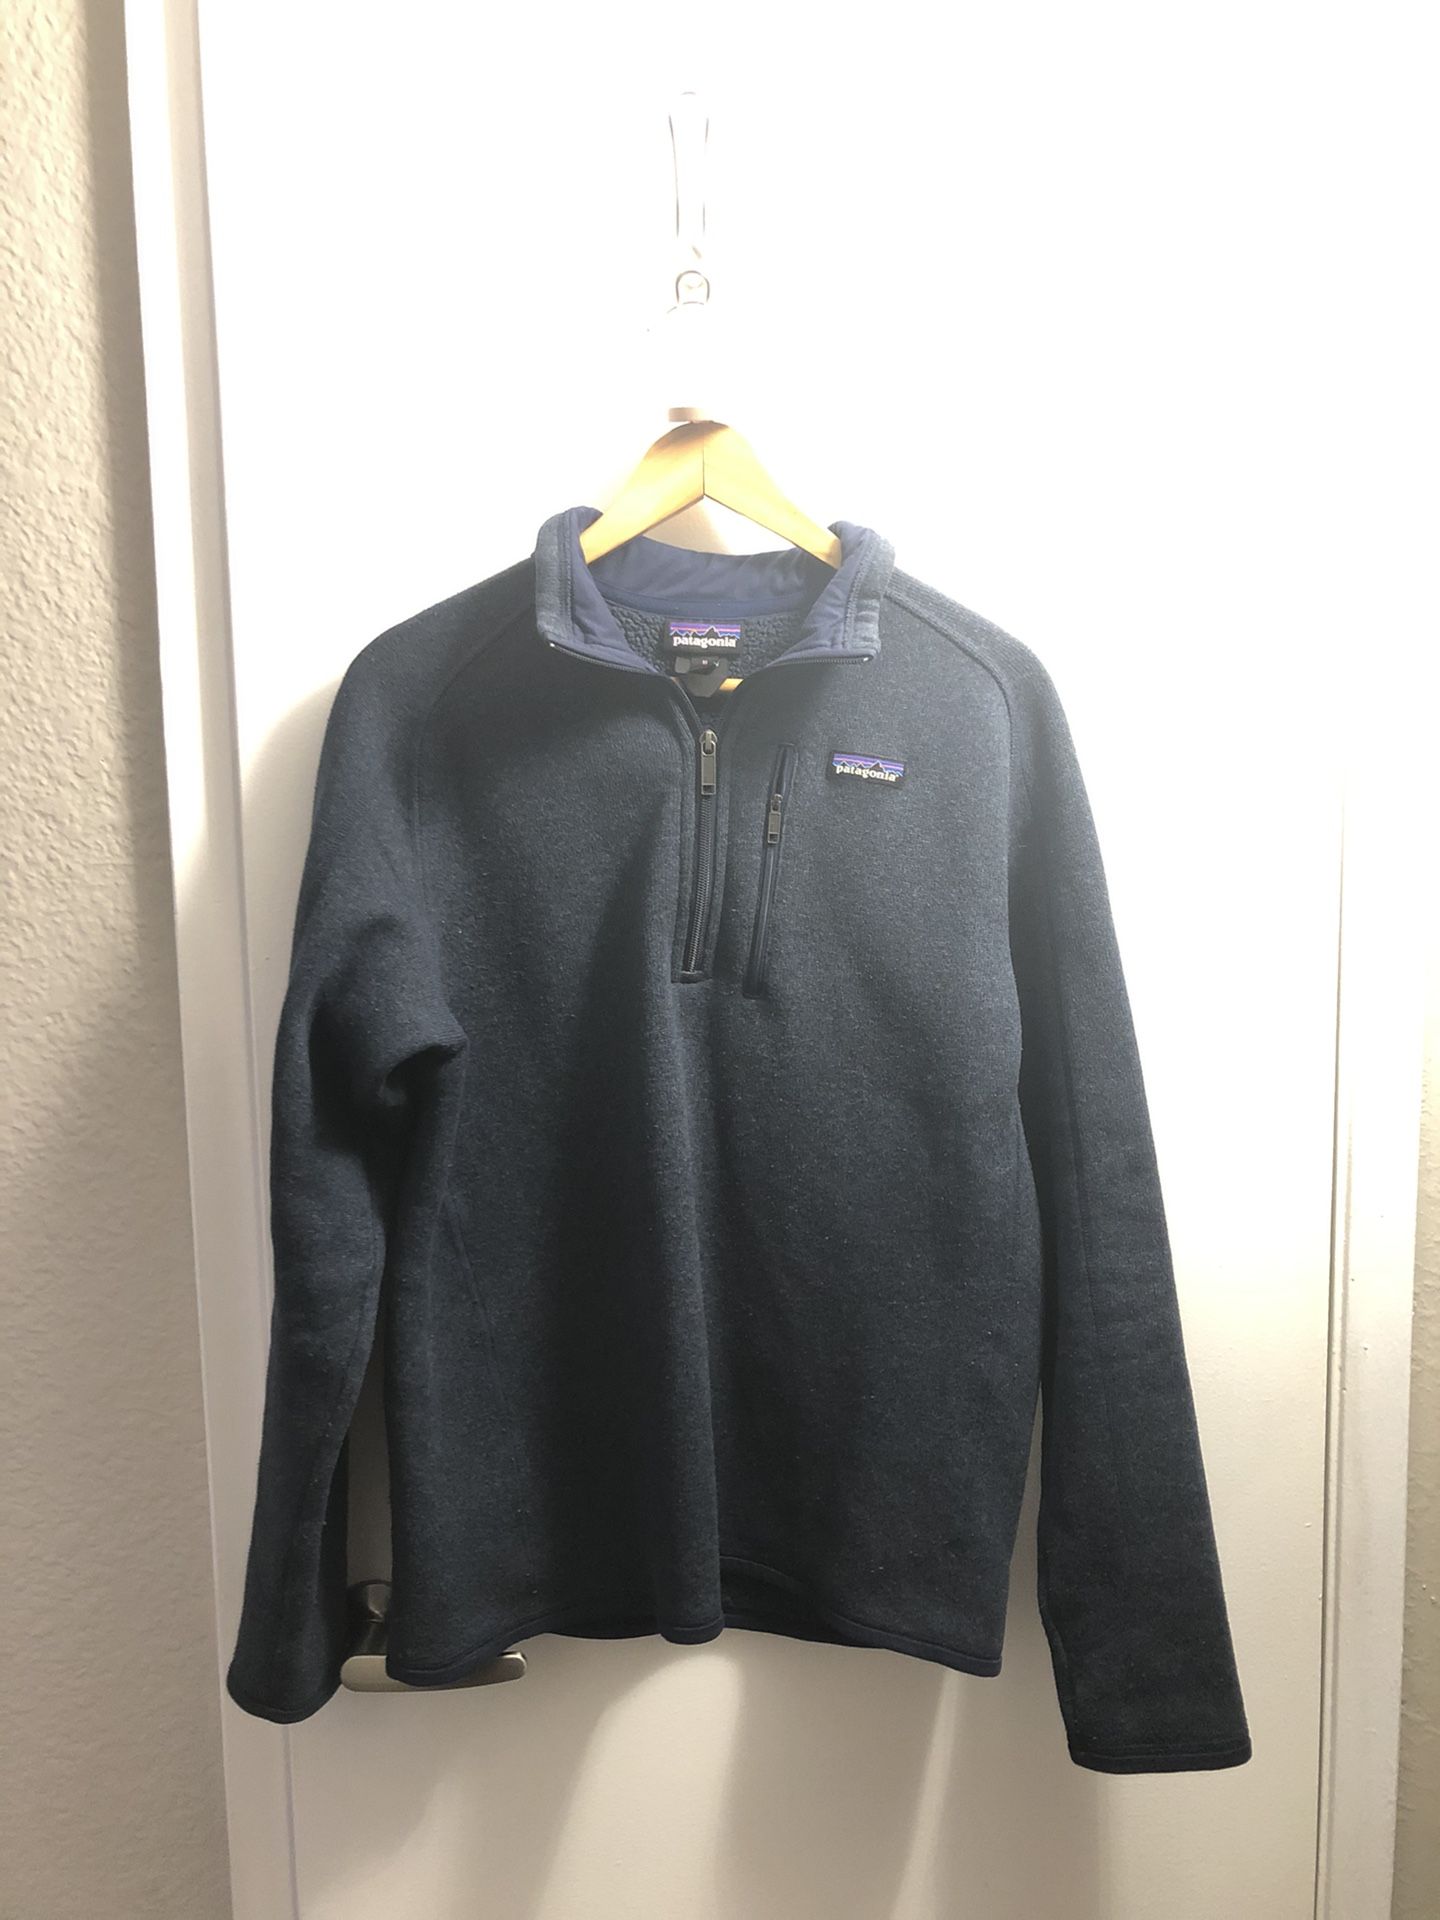 Men’s Blue Patagonia Sweater